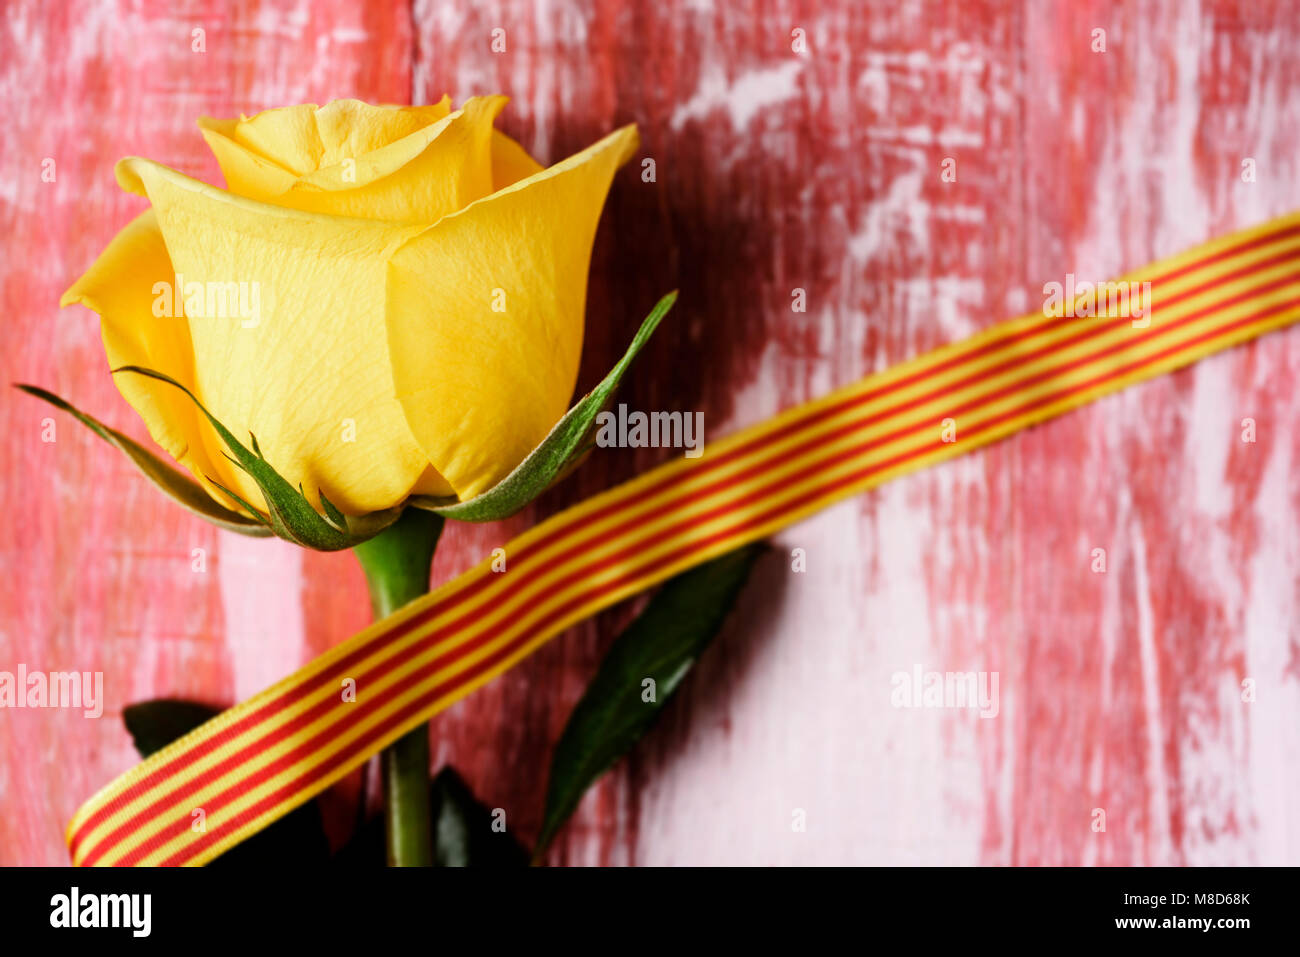 Eine gelbe Rose und eine katalanische Flagge mit rustikalen Holzmöbeln Oberfläche für Sant Jordi, die Katalanische Namen für Saint Georges Tag, Wenn es ist Tradition, Rosen zu geben Stockfoto